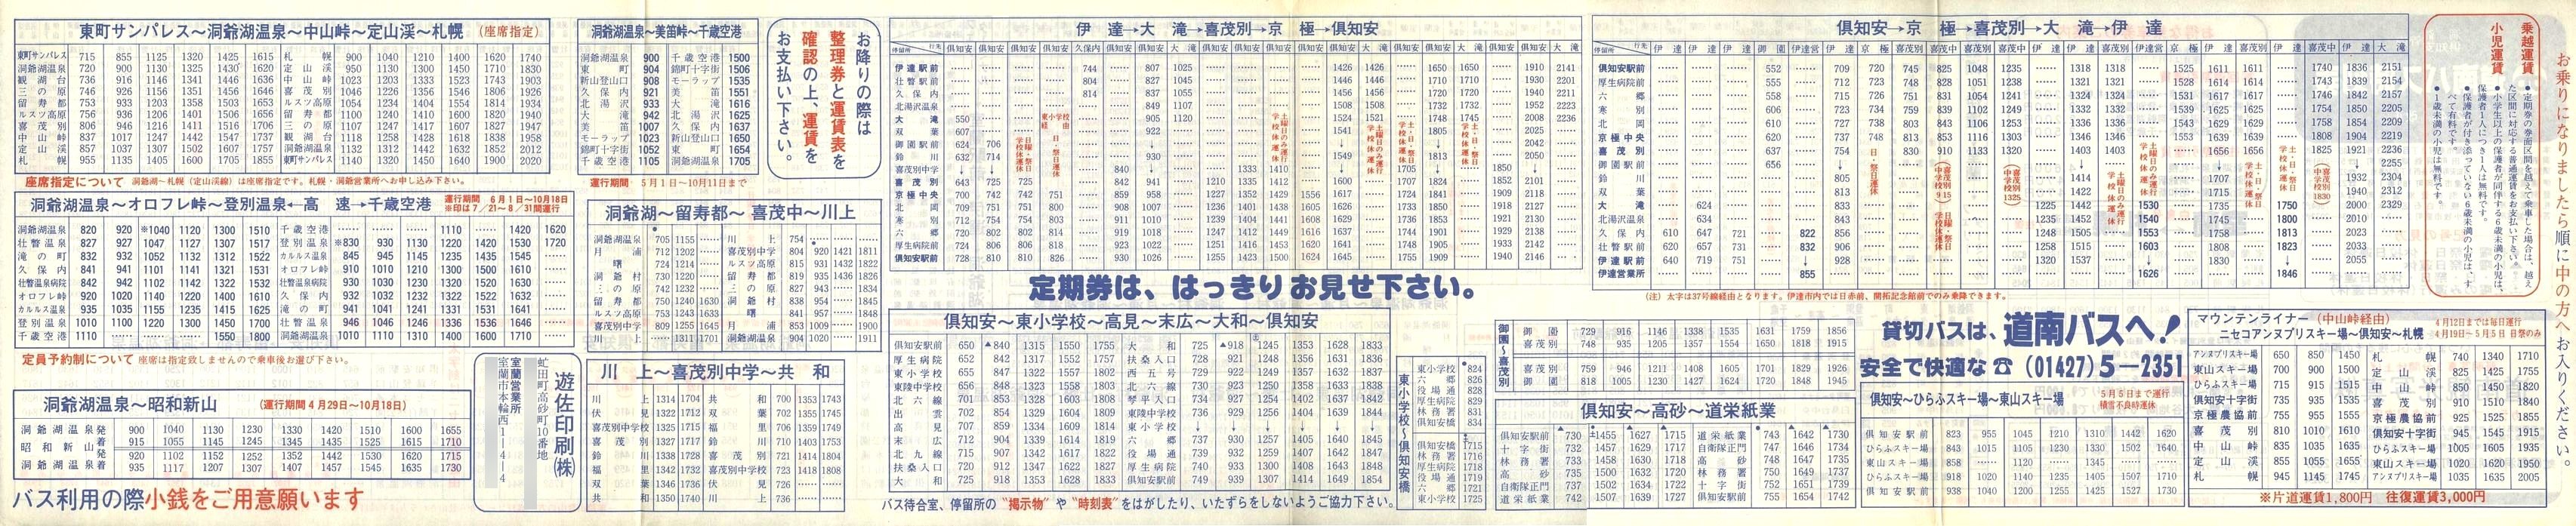 1987-04-01改正_道南バス_洞爺・伊達・倶知安管内時刻表裏面